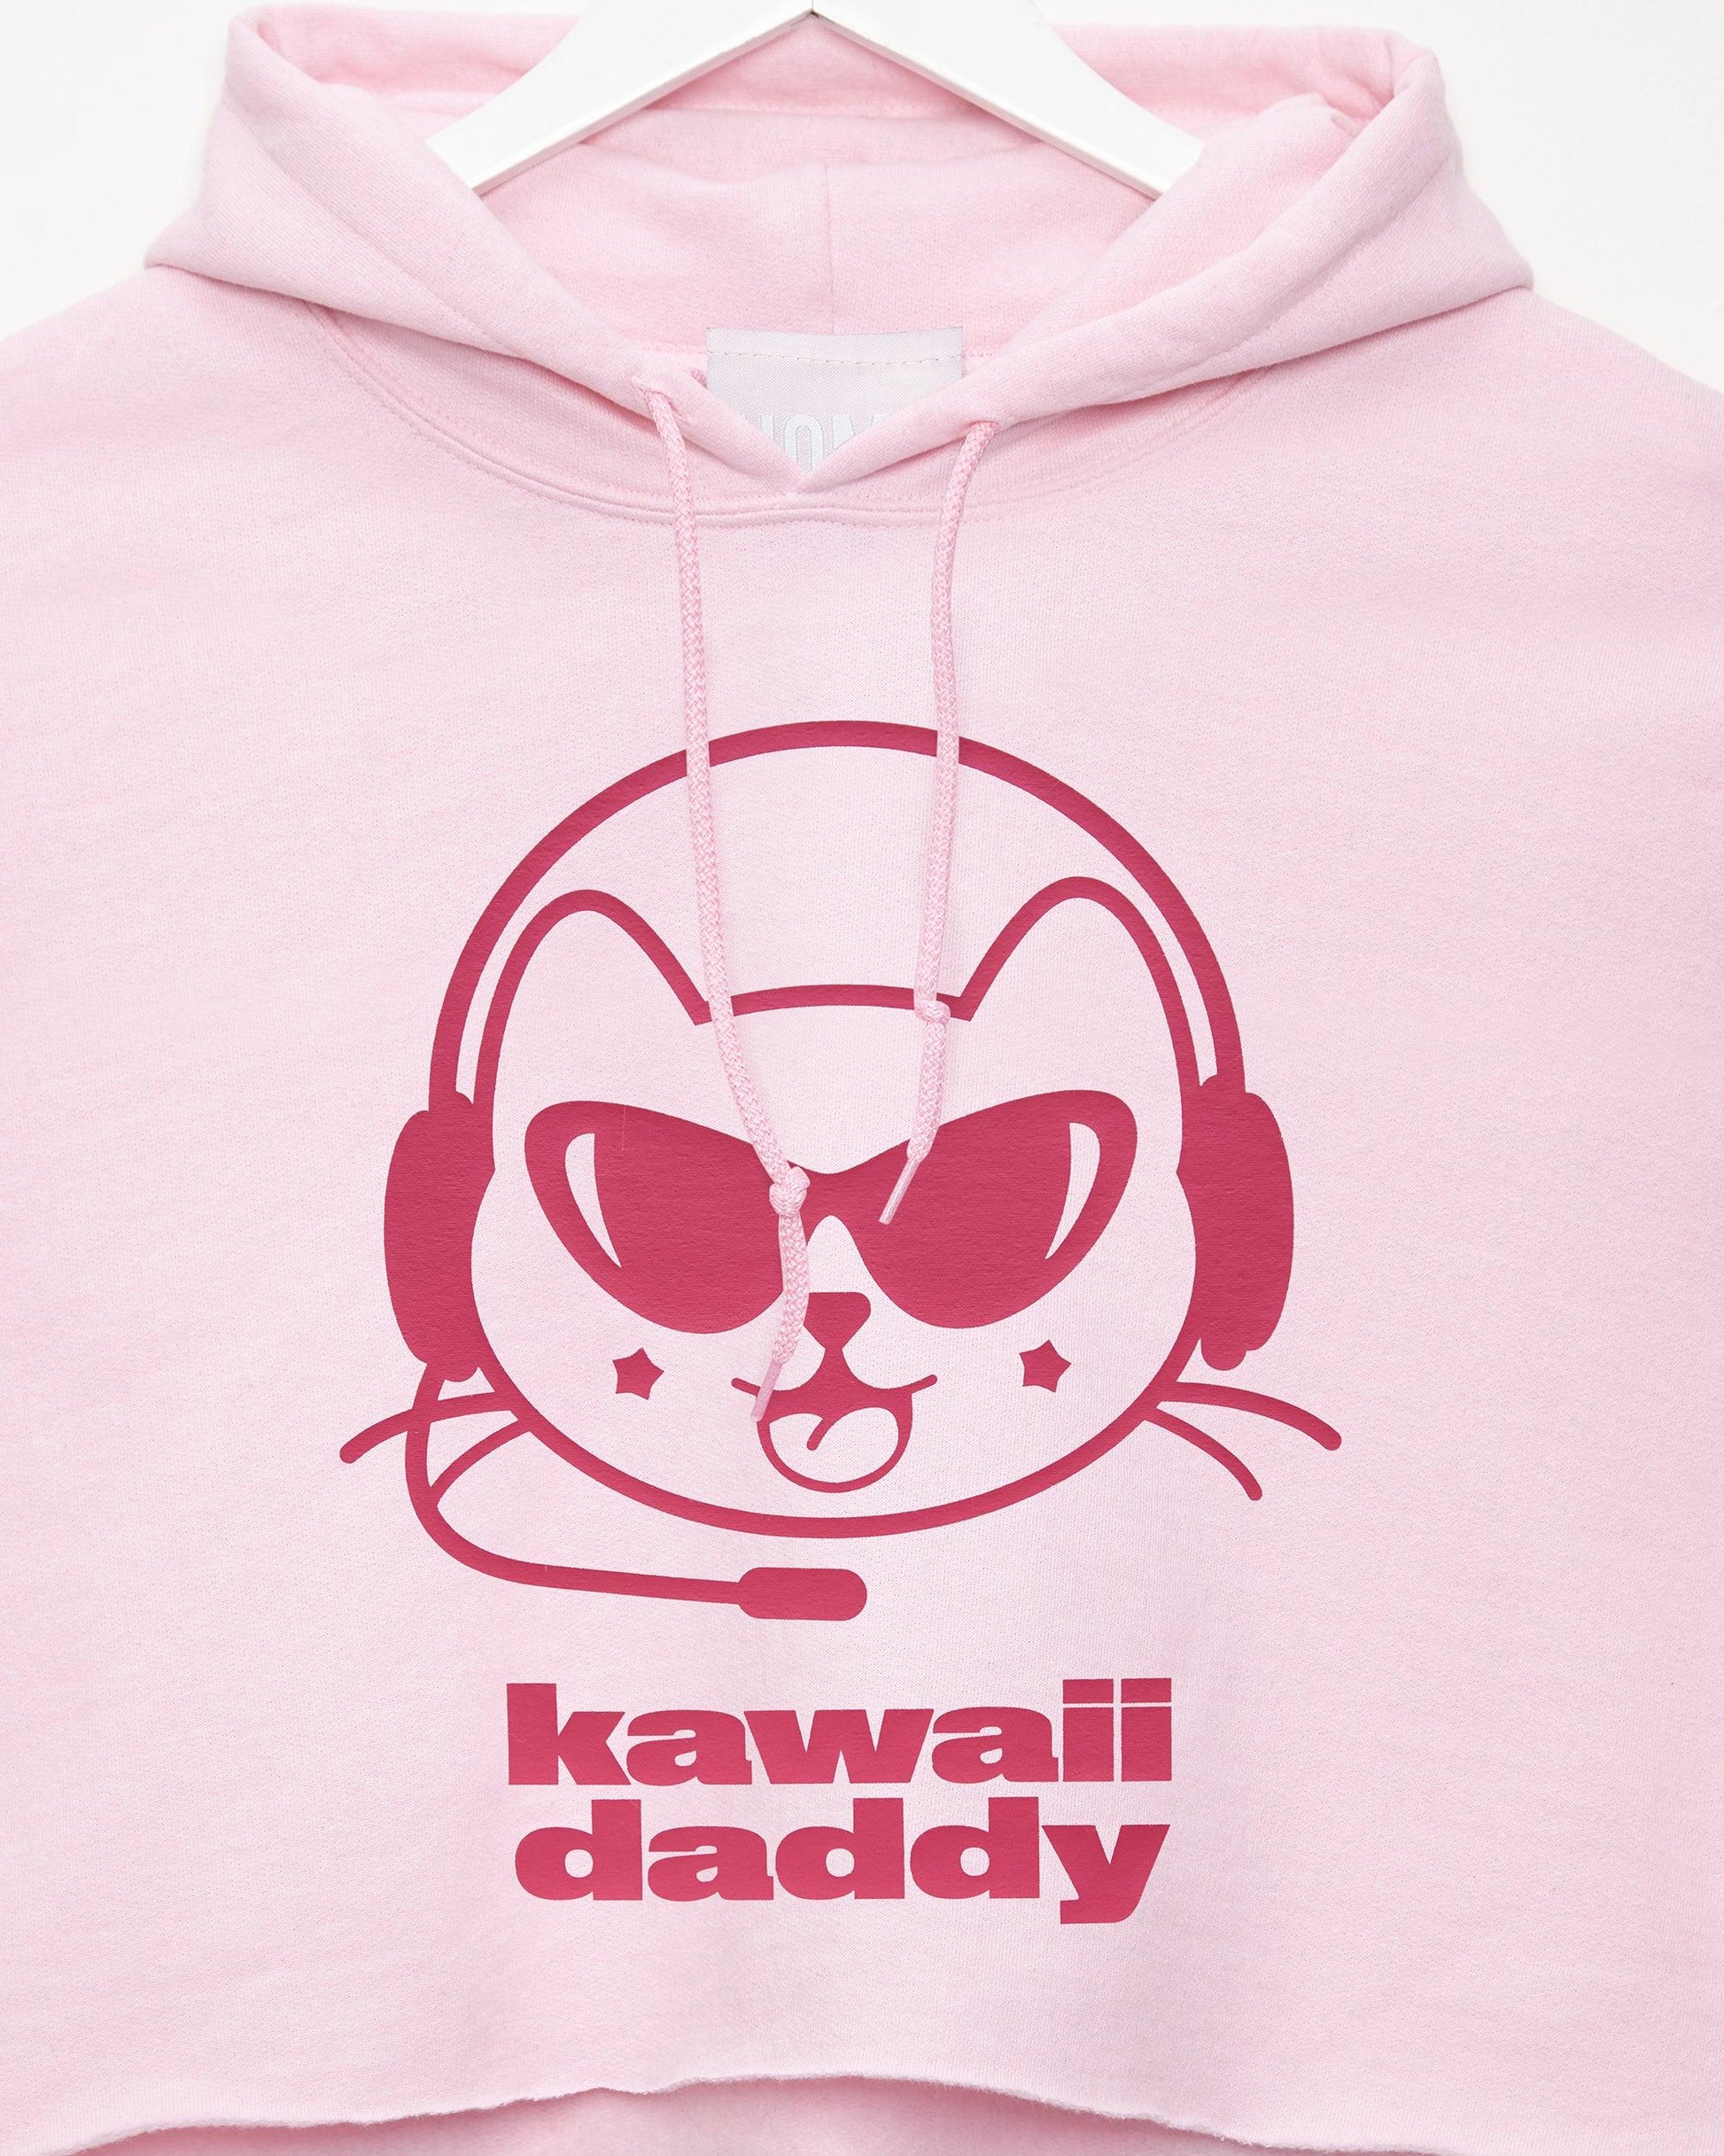 Kawaii daddy, fuchsia/pink - mens hooded crop top - HOMOLONDON